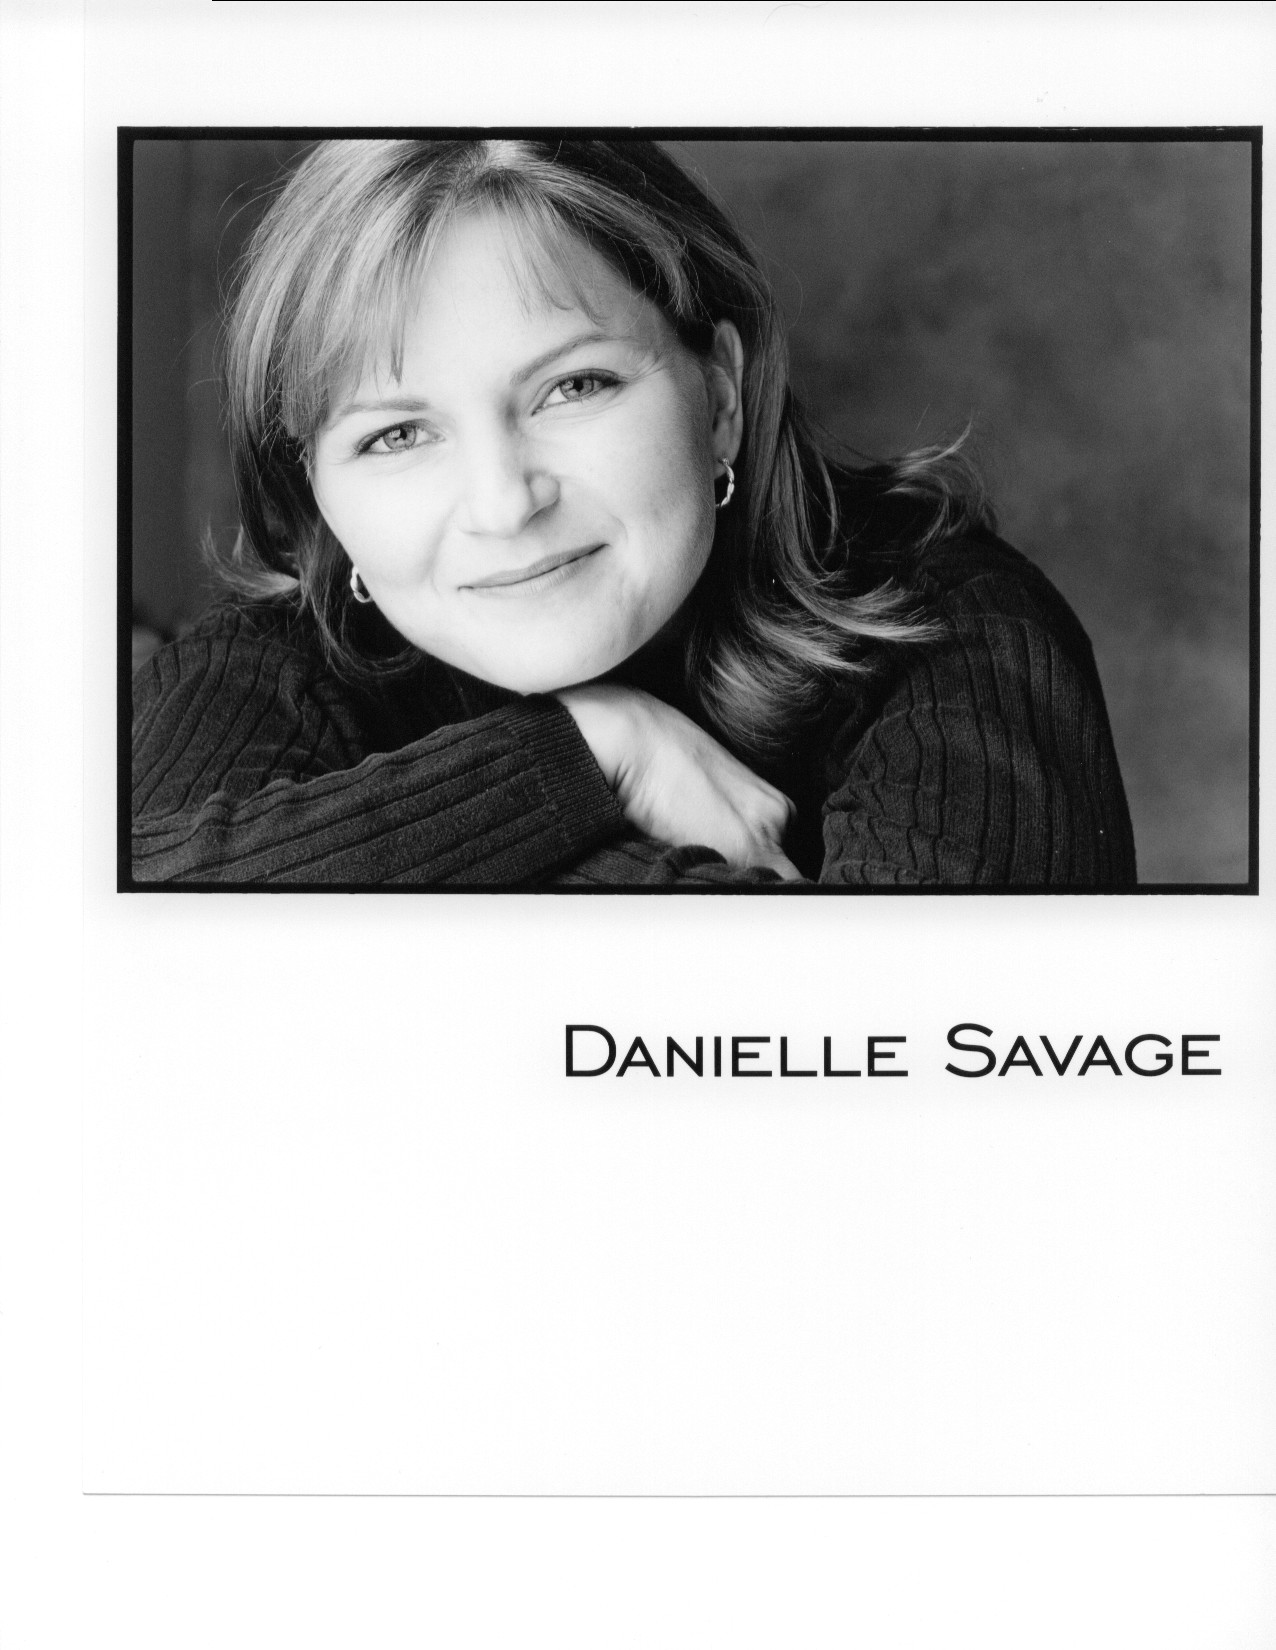 Danielle Savage